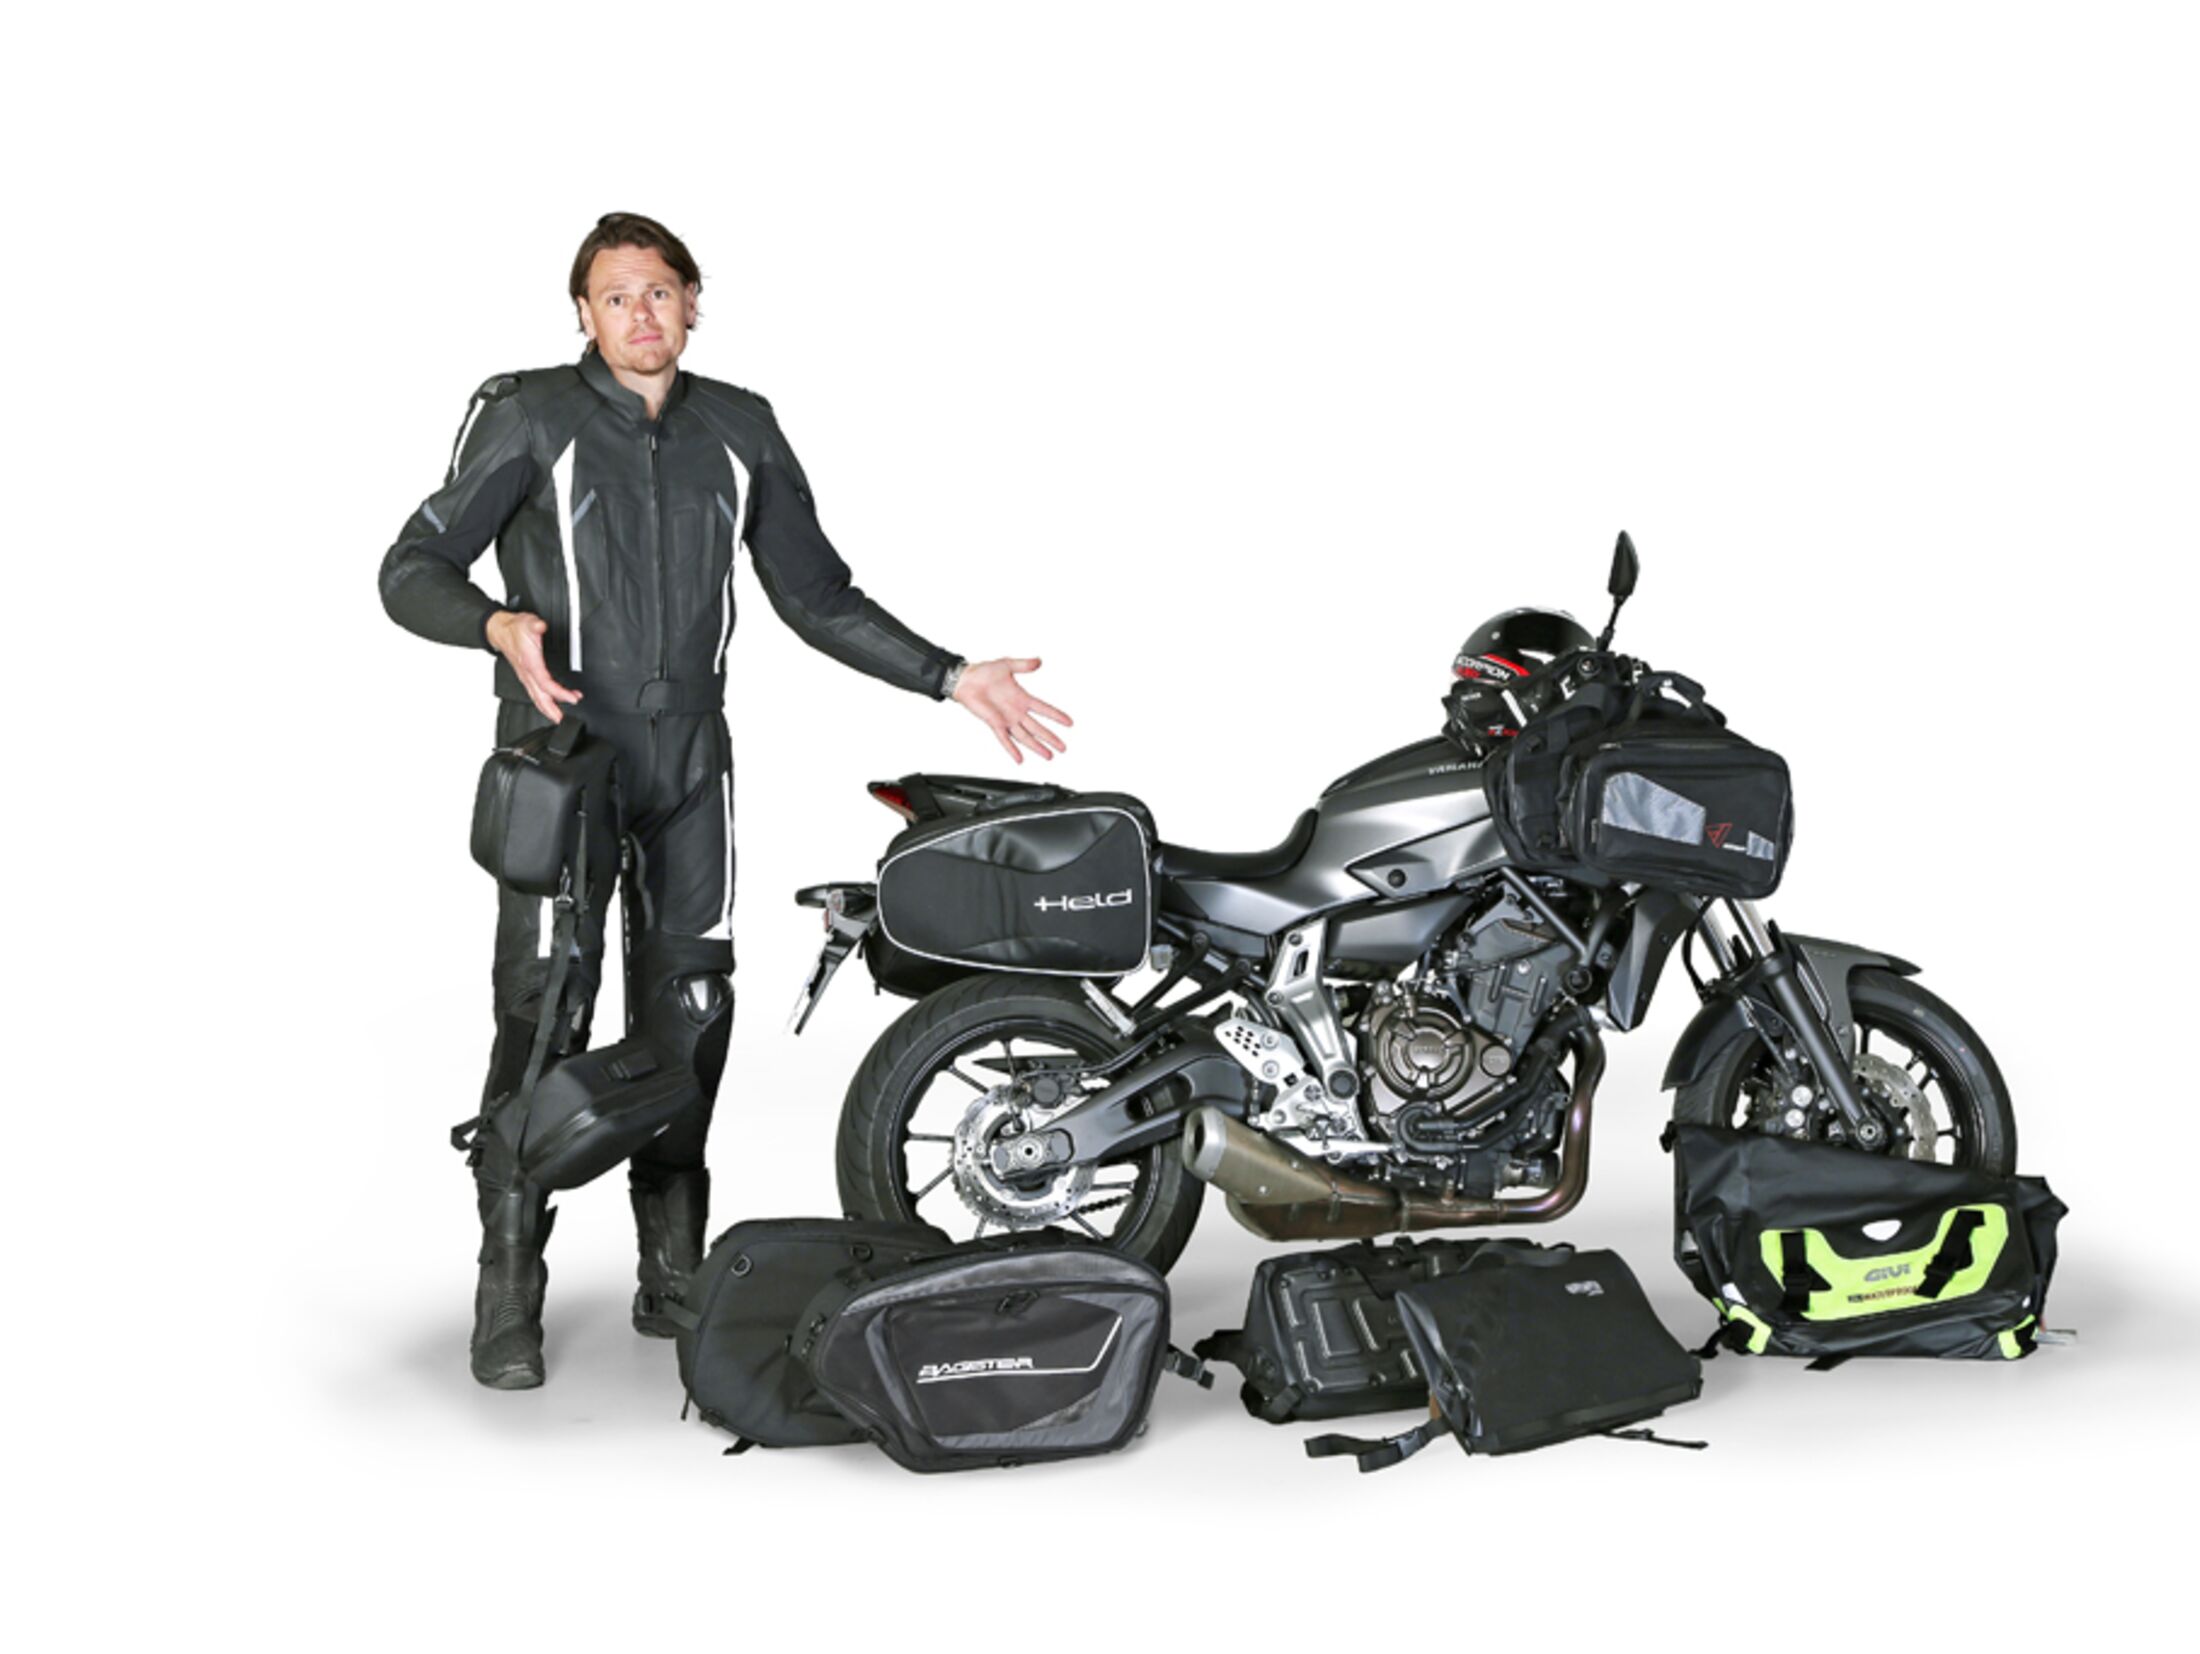 Kaufen Sie die Seitentasche für Motorräder, die alles trägt, was dafür  entwickelt und hergestellt wurde